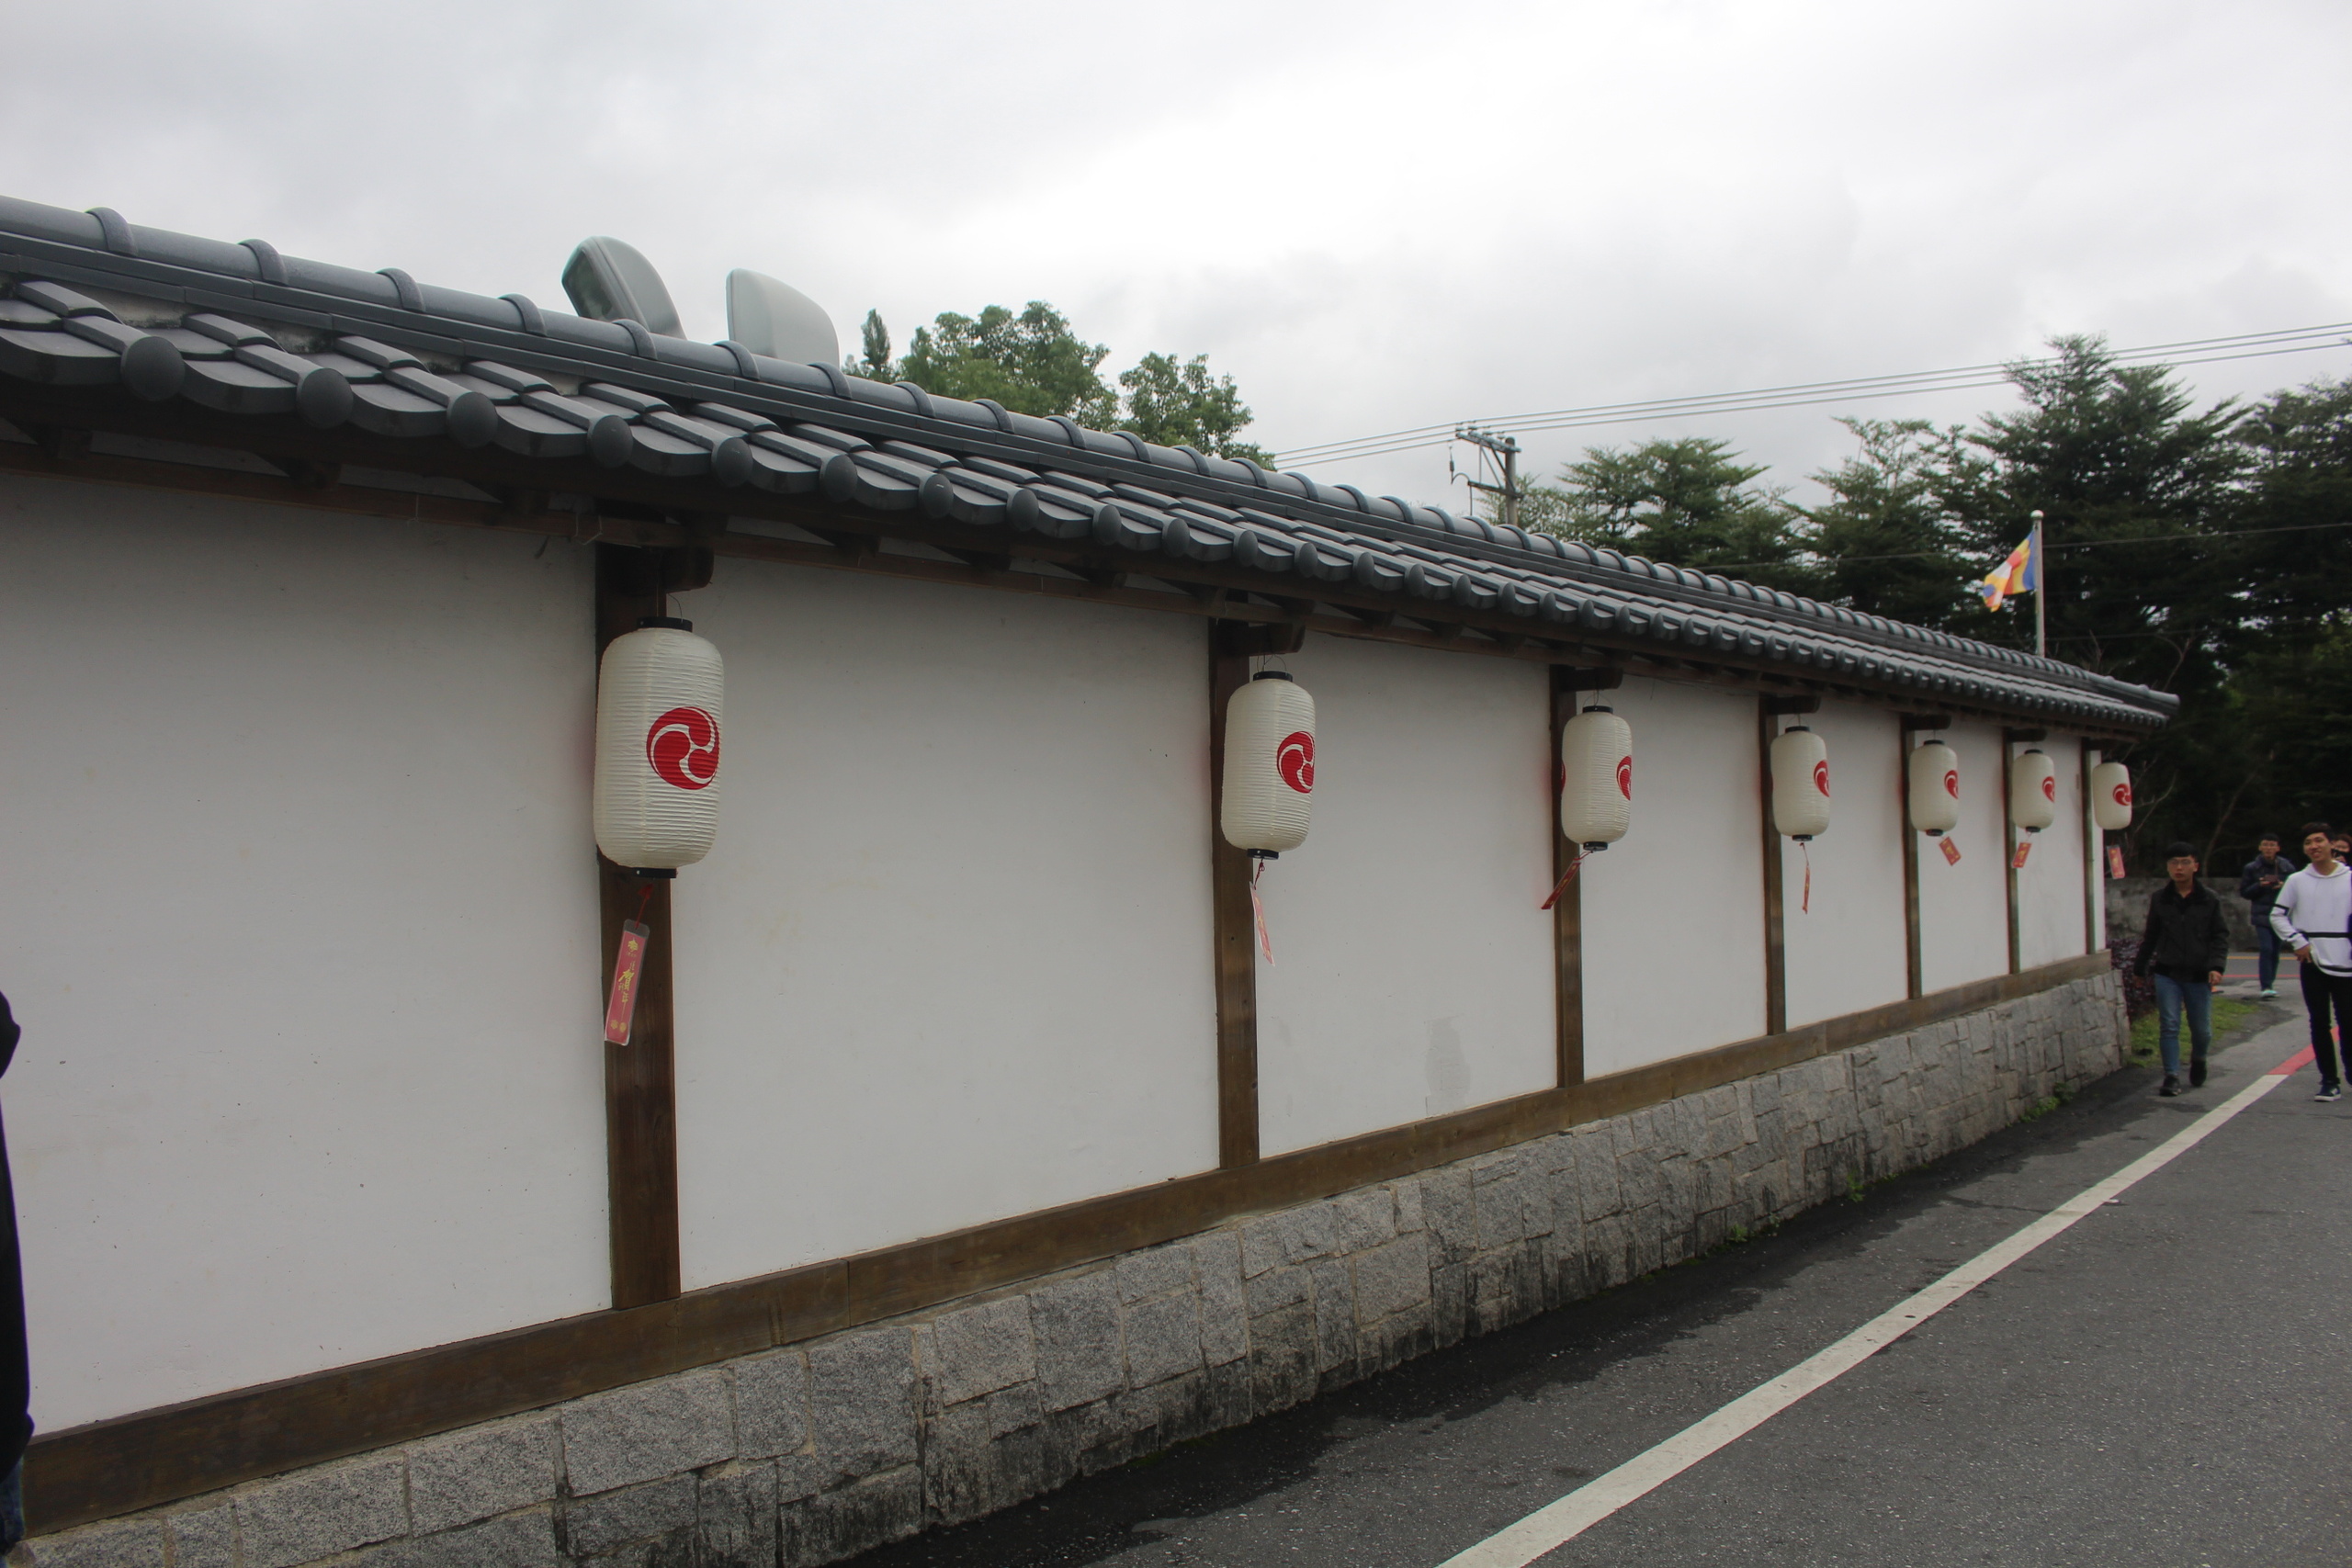 三級古蹟,吉安慶修院,日本傳統佛堂,花蓮景點